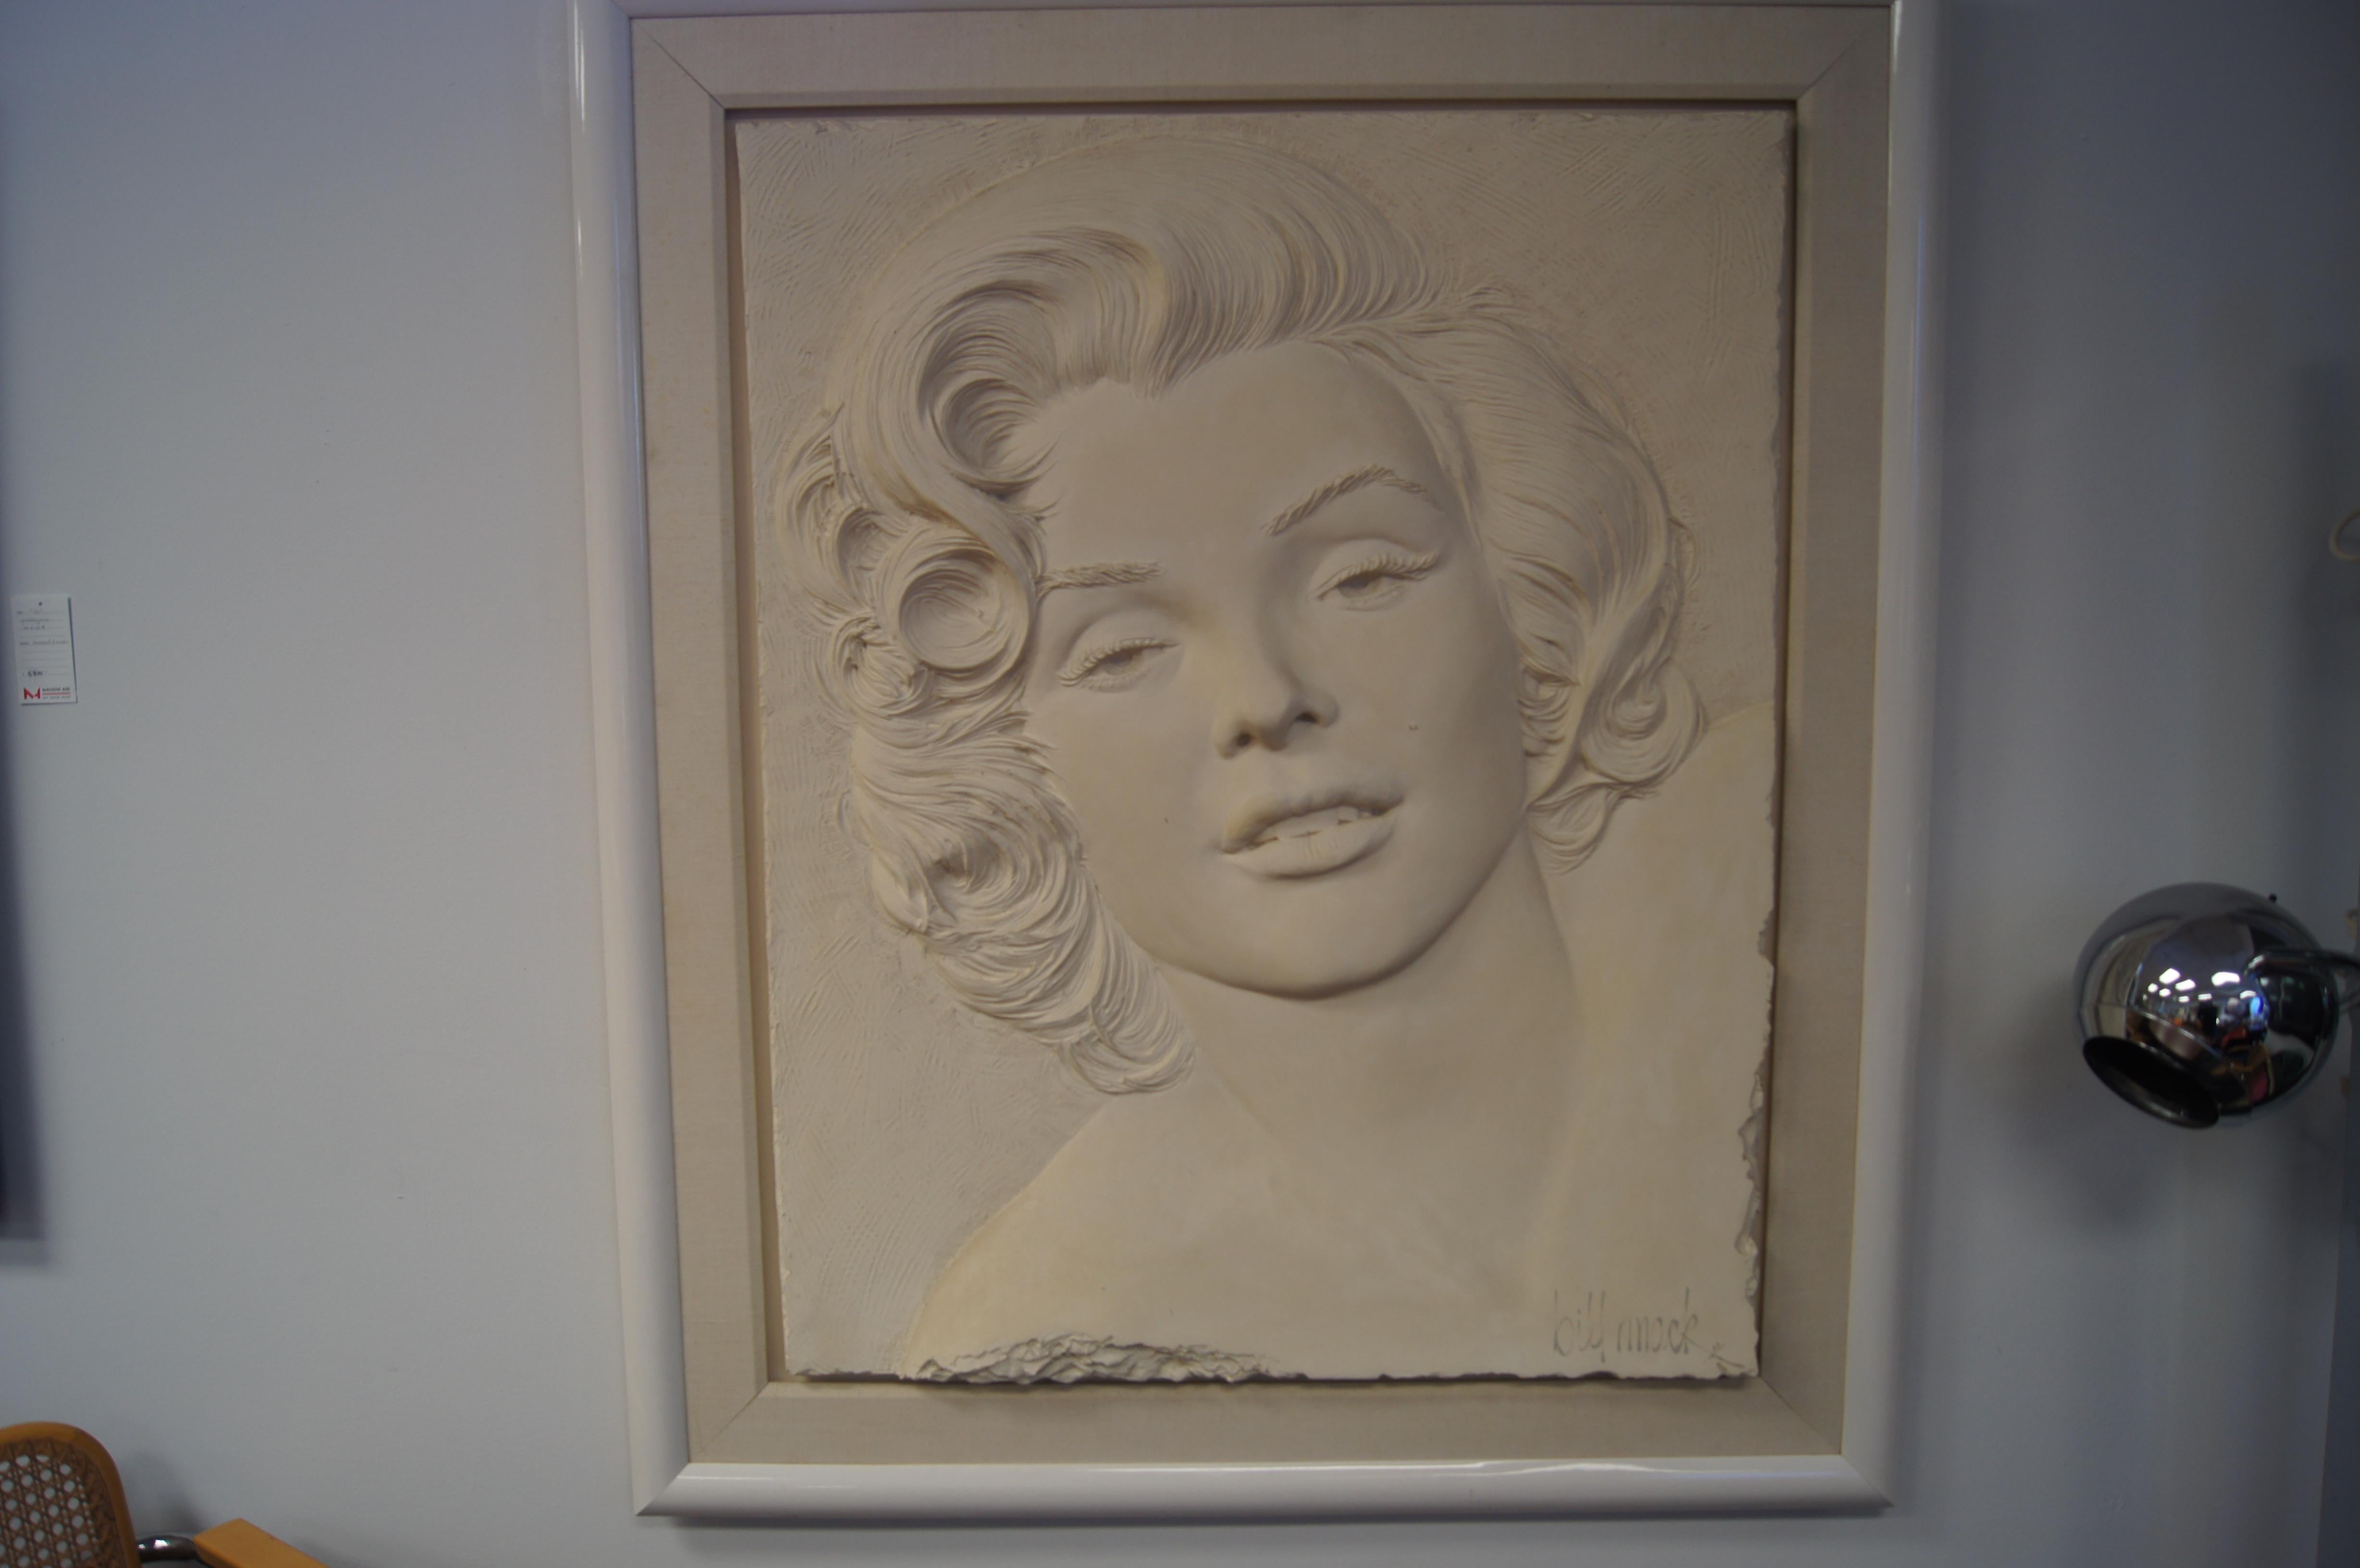 Dieses große gerahmte Flachrelief von Marilyn Monroe wurde 1984 von Bill Mack geschaffen und ist ein schönes Beispiel für die bekannteste bildhauerische Technik des Künstlers, bei der harzgebundener Sand verwendet wird. Es würde jeden Sammler von